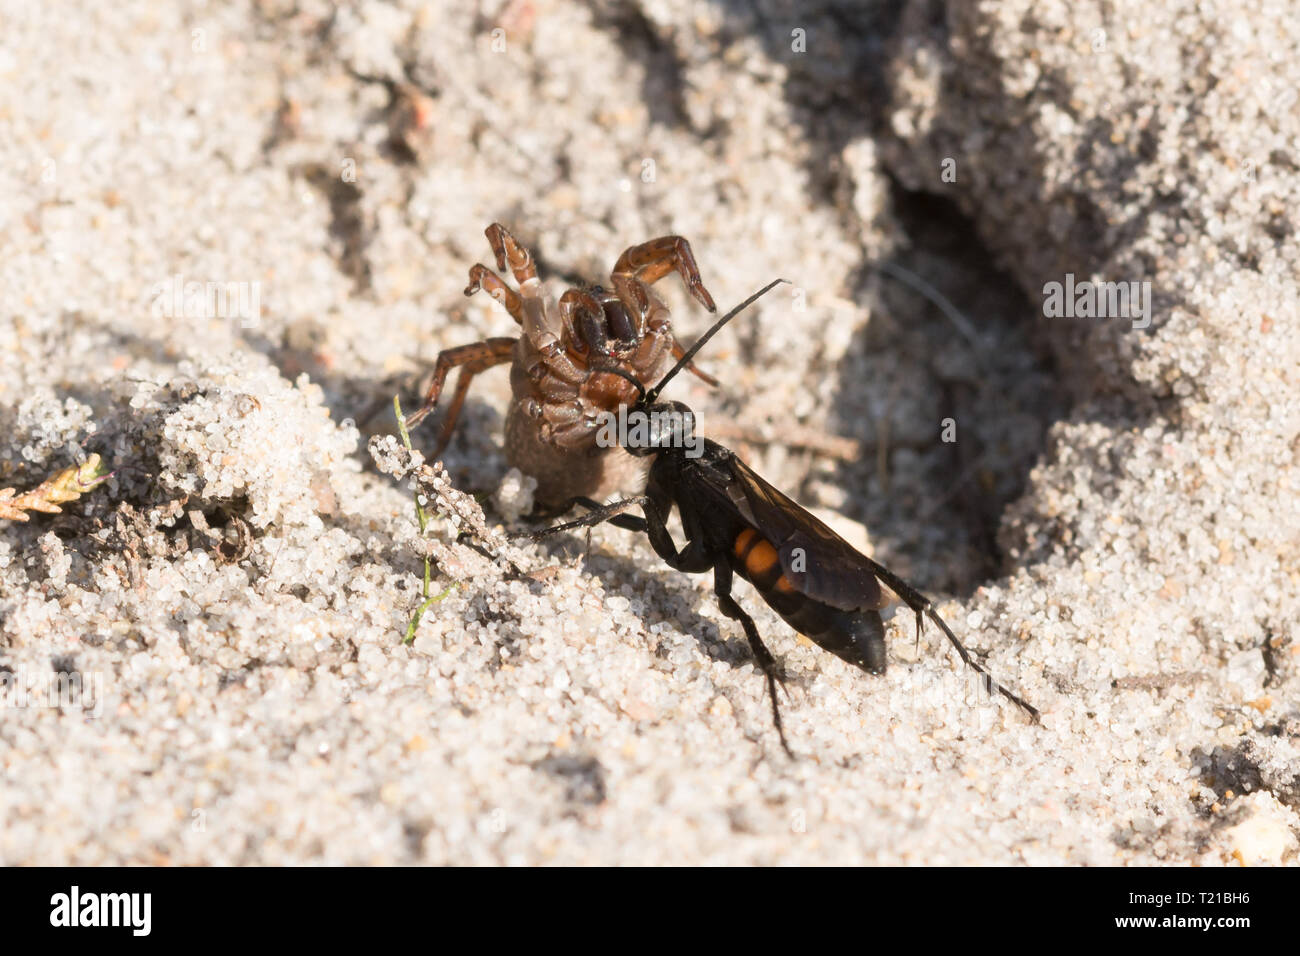 Schwarz-Gebändert spider Wasp (Anoplius viaticus), eine Spinne - Jagd, Wasp, am Sandstrand Heide mit einem gelähmten Spider für die Bereitstellung von seinem Nest, Surrey, Großbritannien Stockfoto